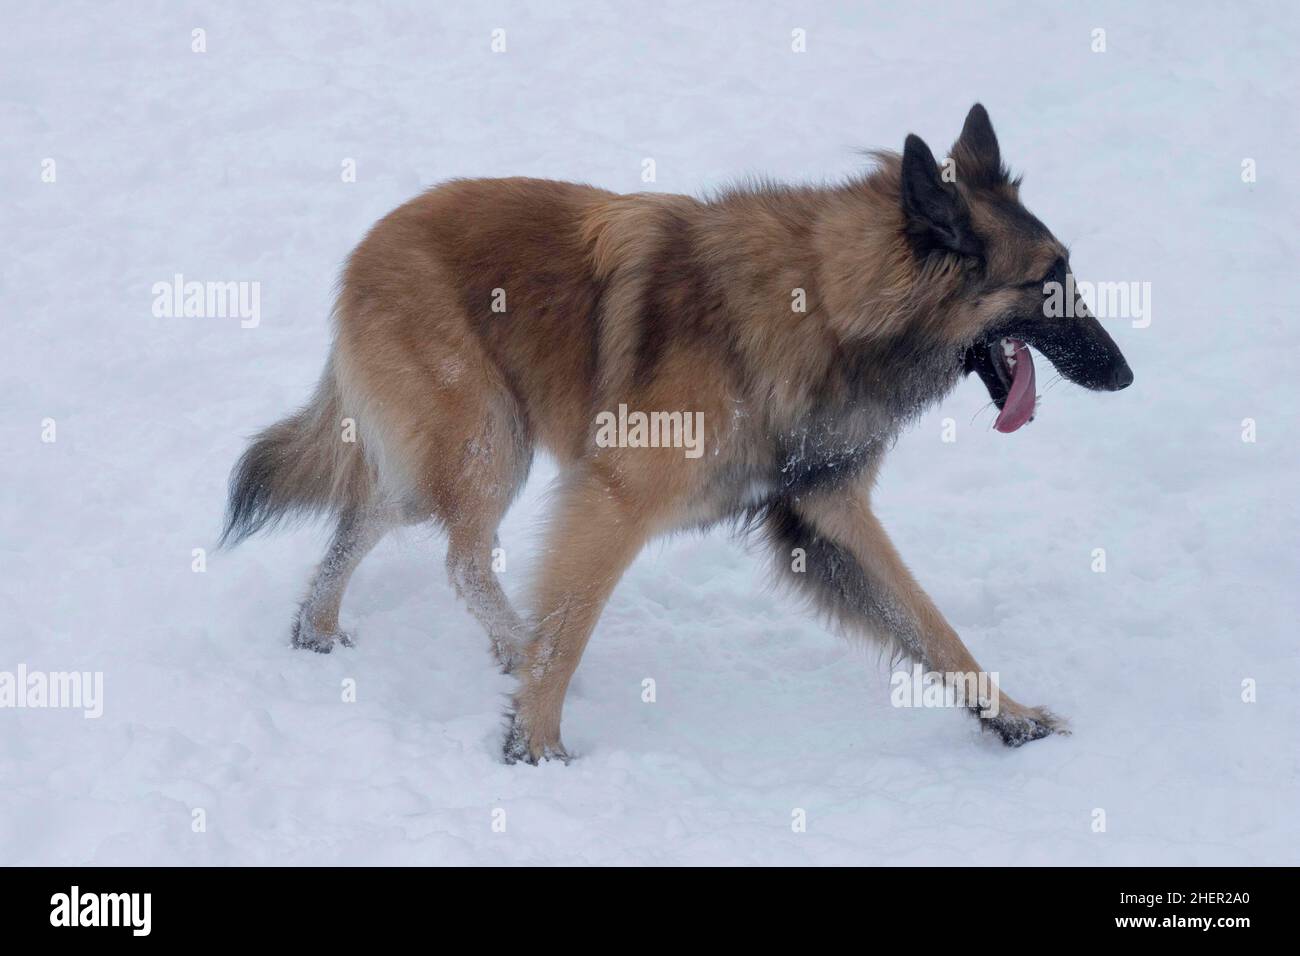 Il cucciolo di tervuren, il cane da pastore belga, cammina su una neve bianca nel parco invernale. Animali domestici. Cane purebred. Foto Stock